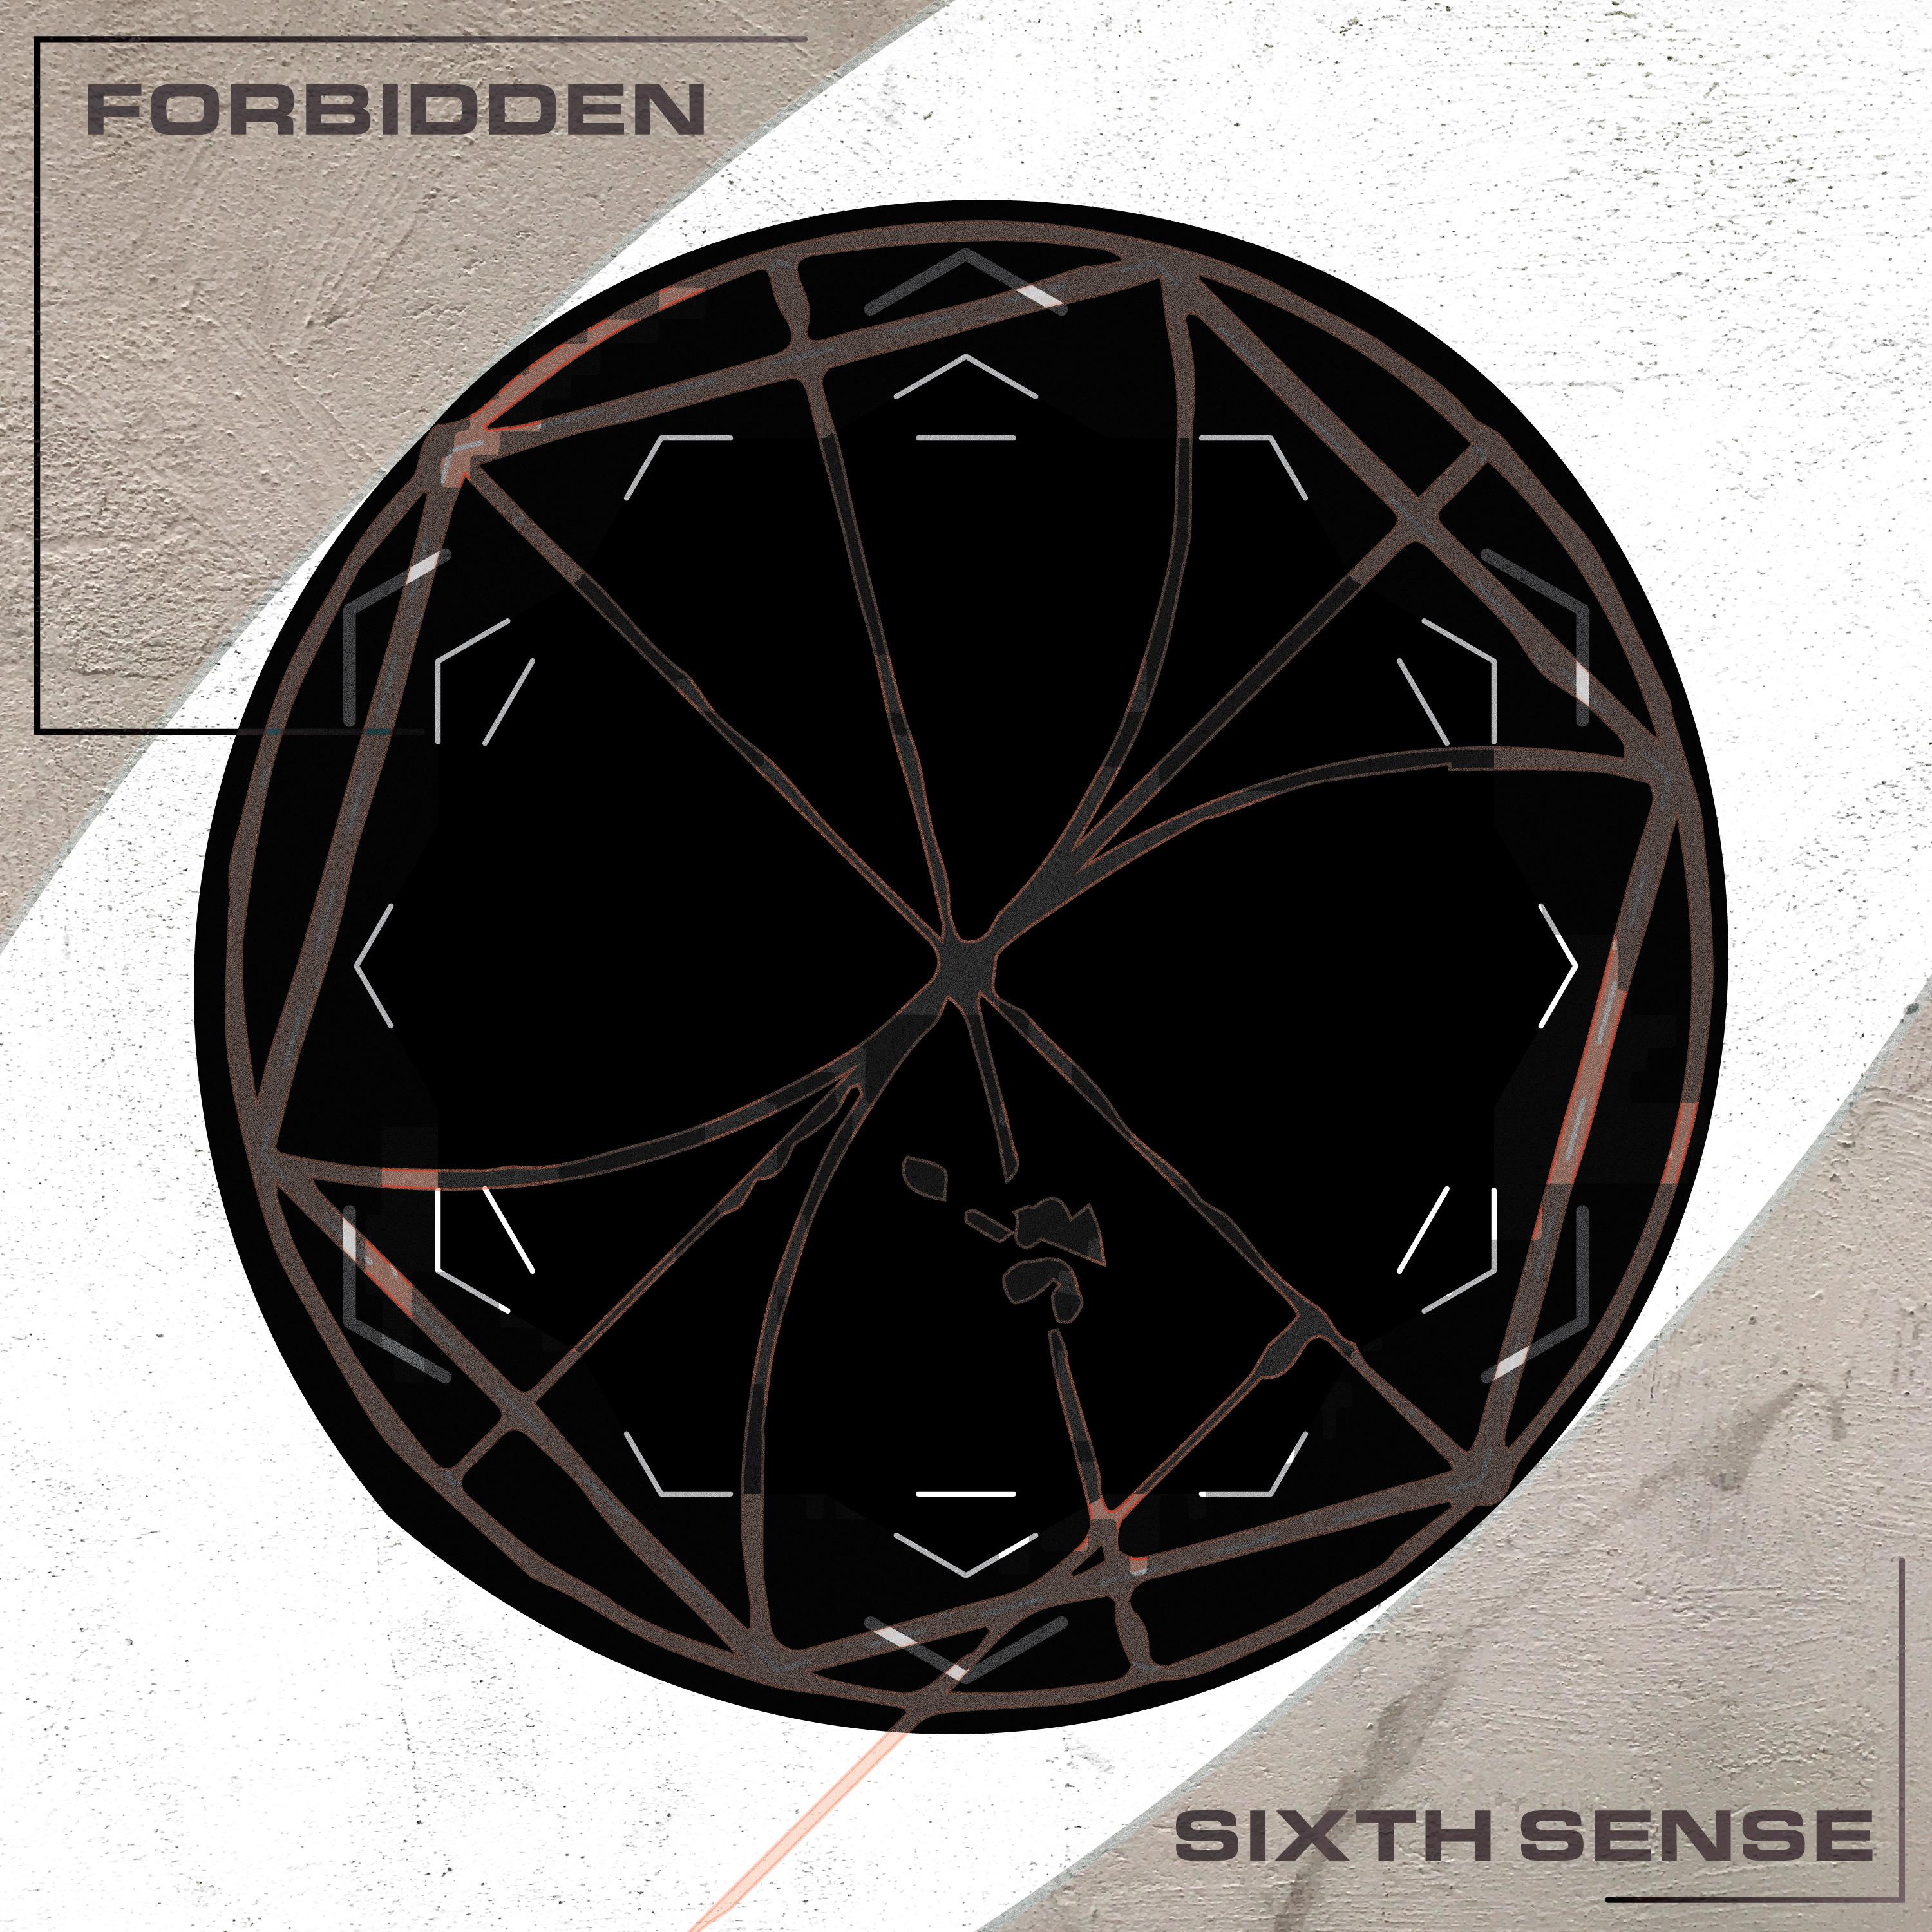 Sixth Sense - Forbidden